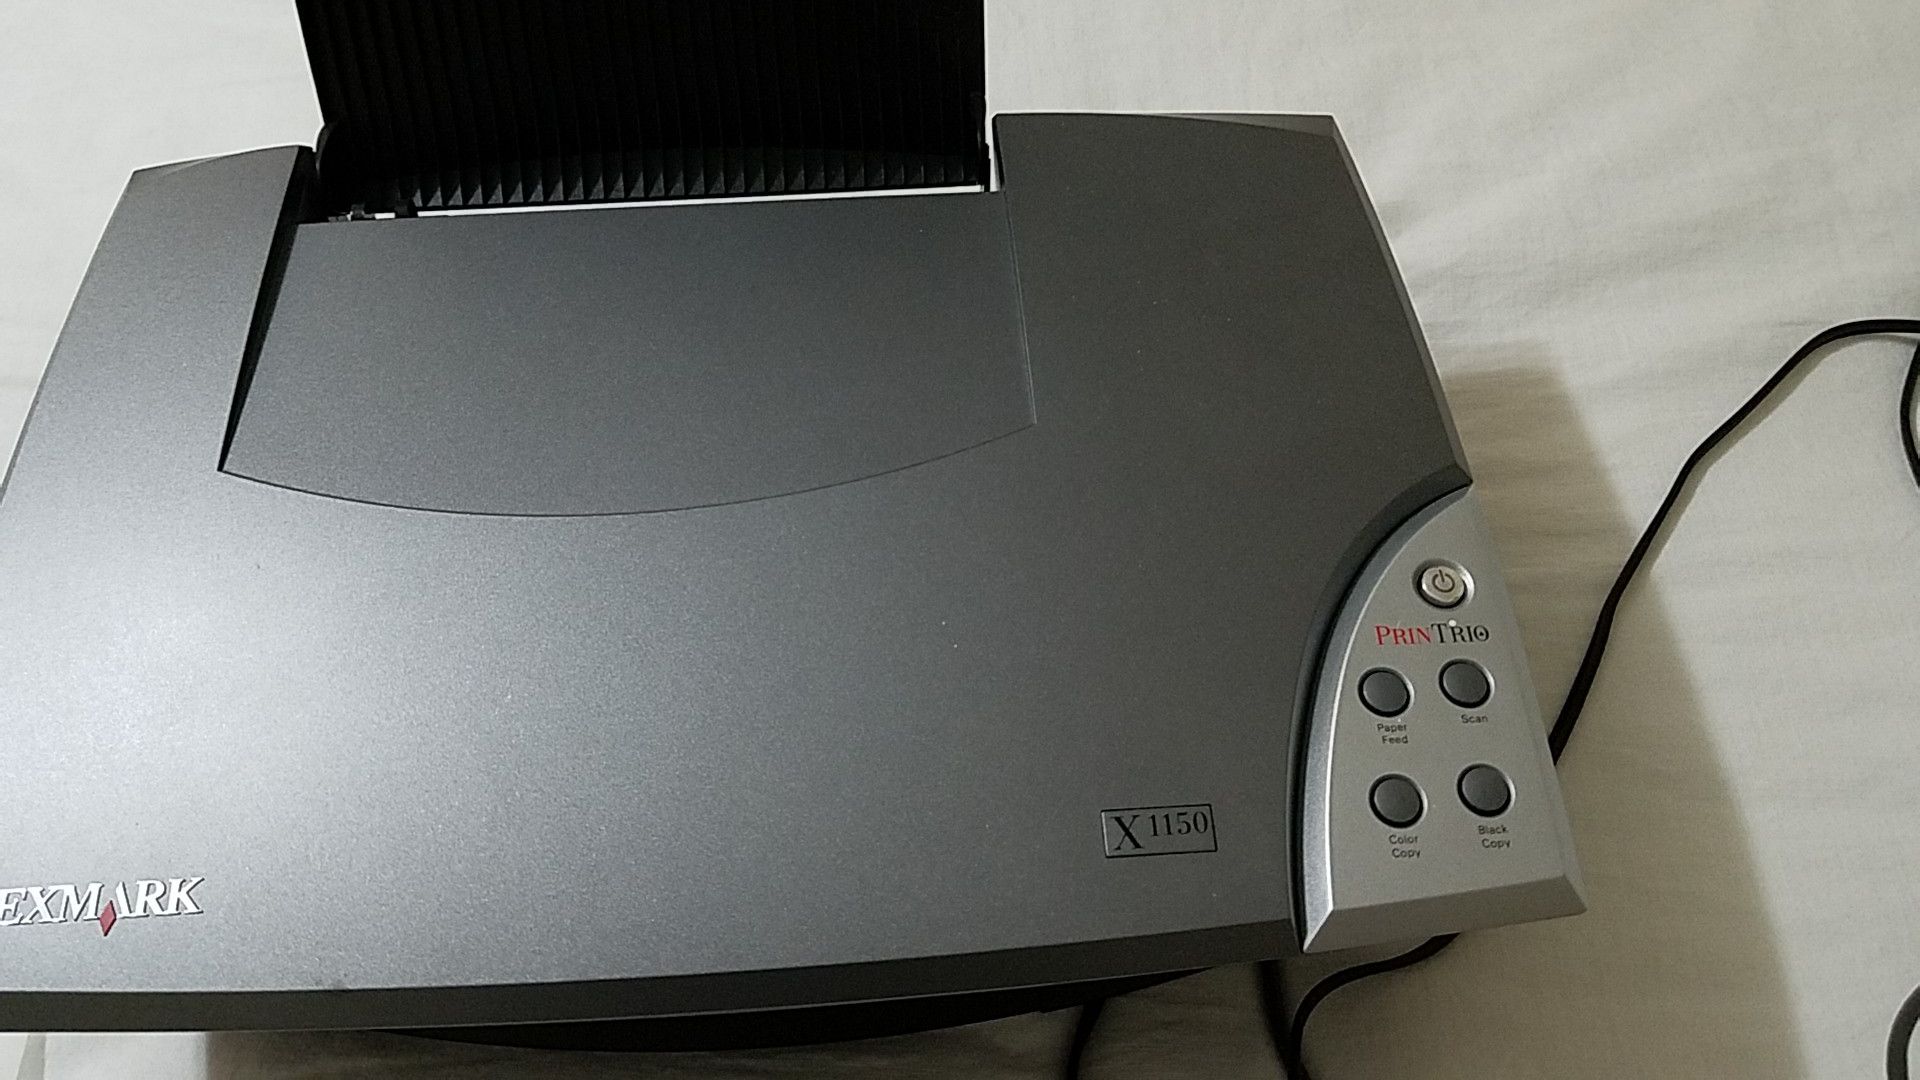 Lexmark printer, copier, scanner